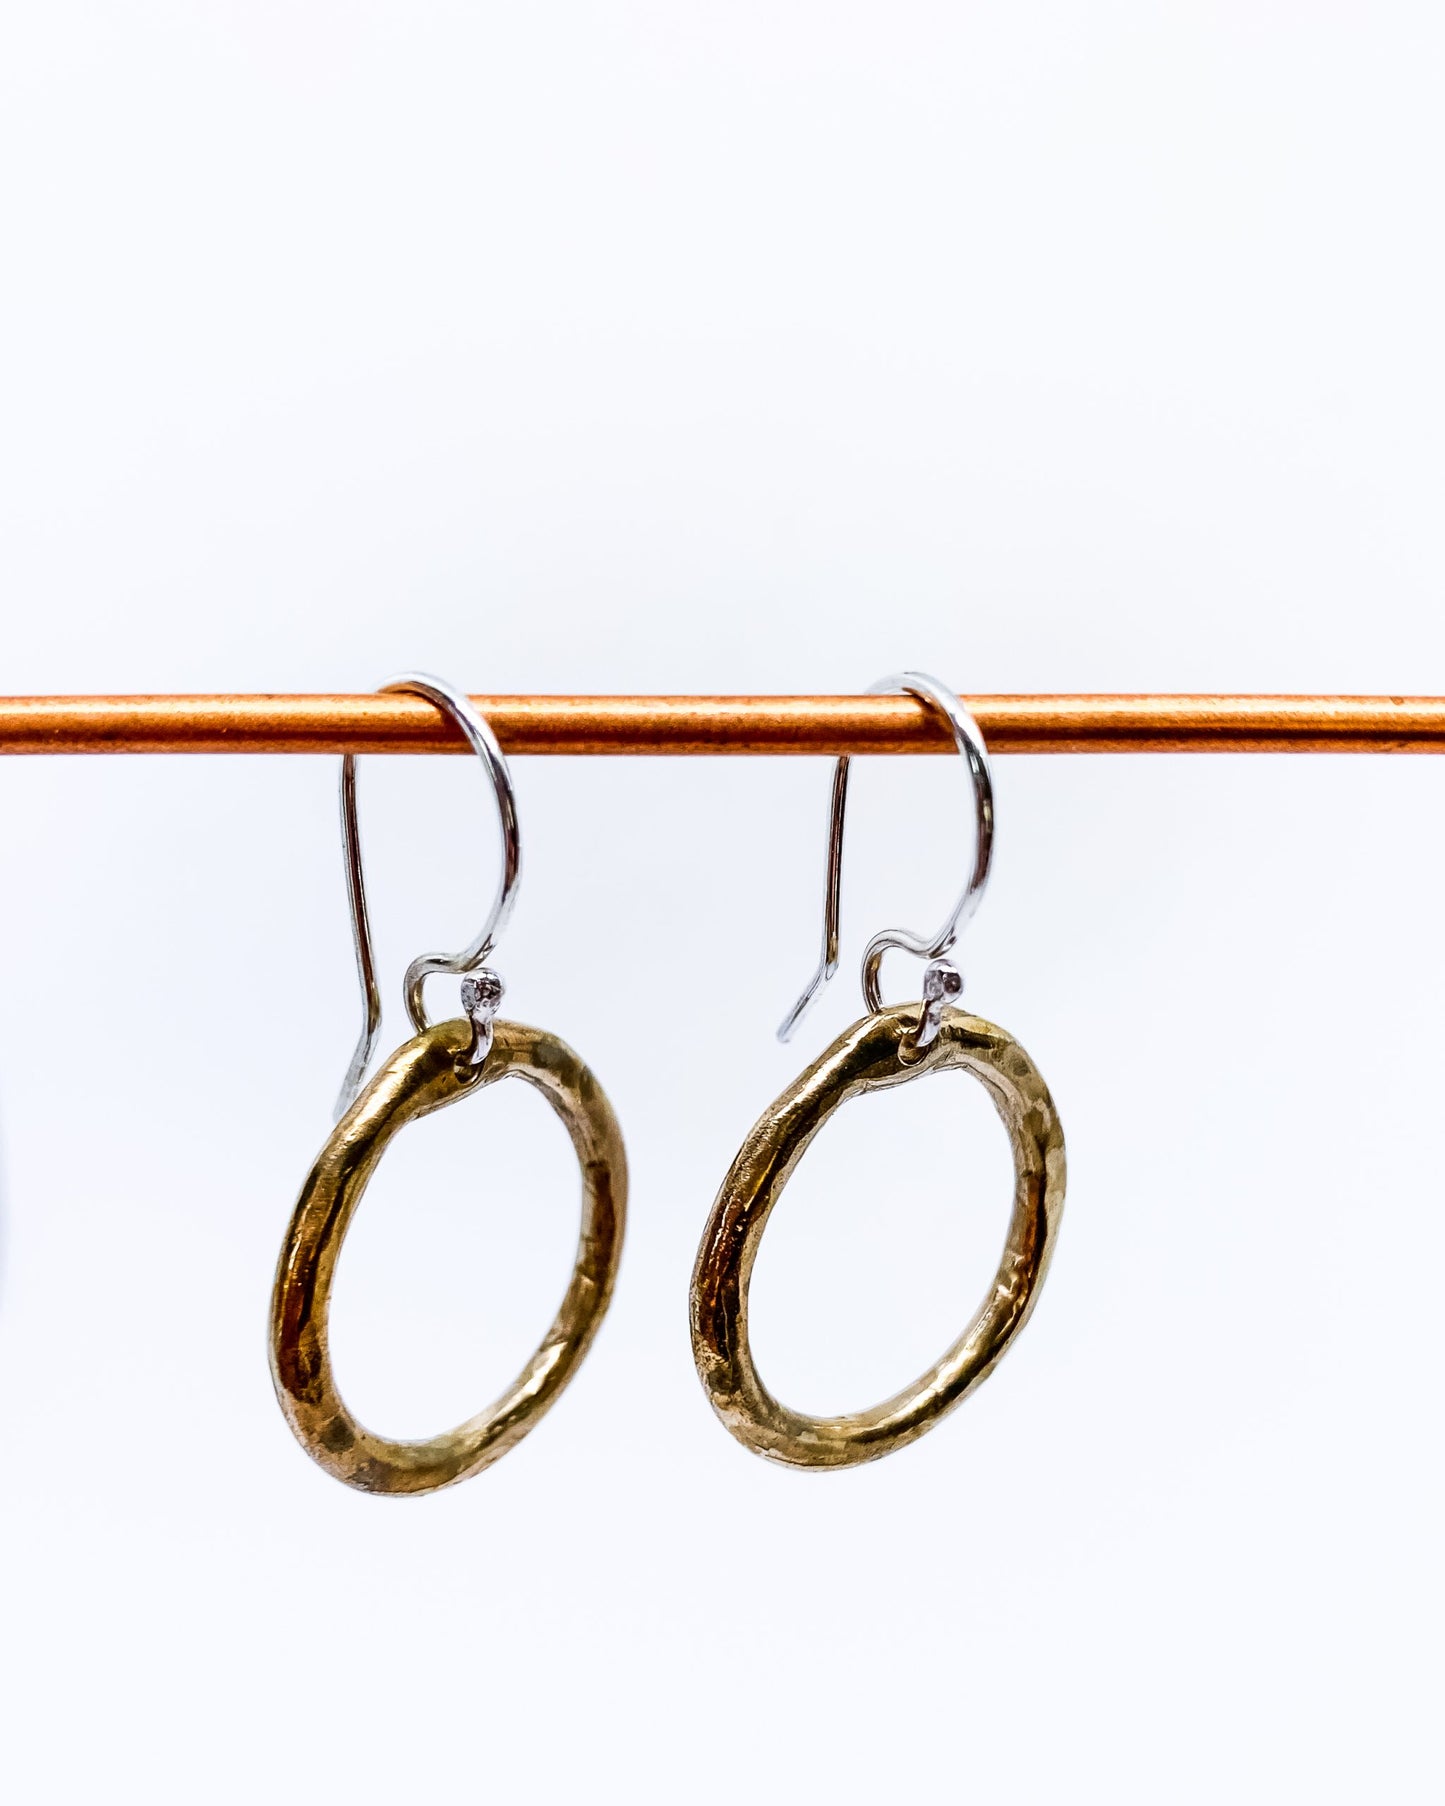 Organic Circle Hoop Earrings | Hooks | Bronze + Sterling Silver